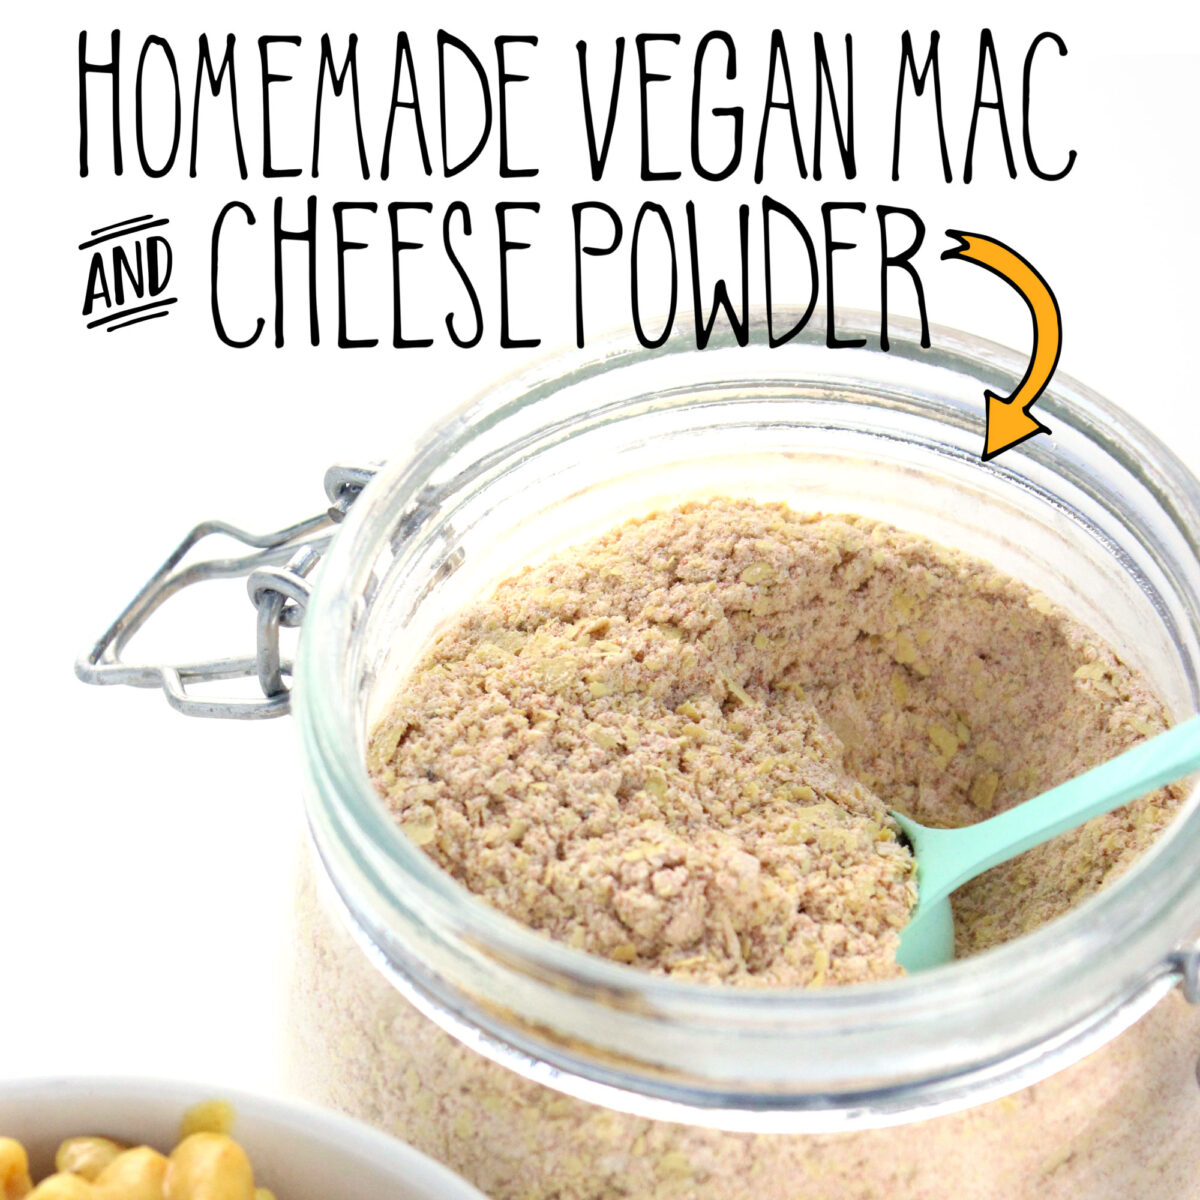 Homemade Vegan Mac and Cheese Powder